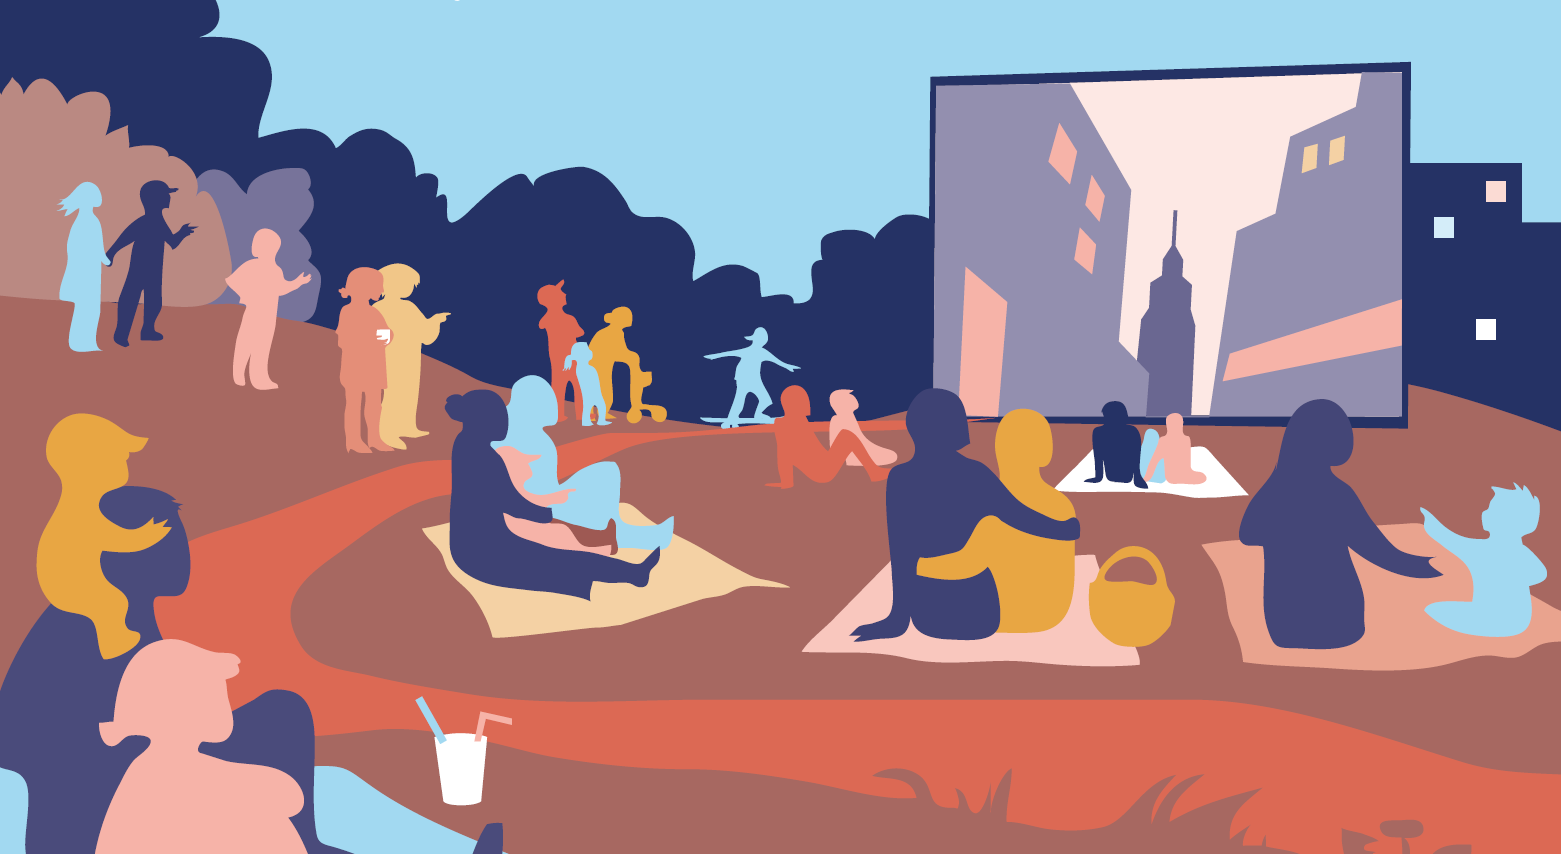 Plakatillustration für ein Open-Air Kino im Park. Zu sehen sind verschiedene Personen auf Picknickdecken, die Arm in Arm auf eine Leinwand schauen.